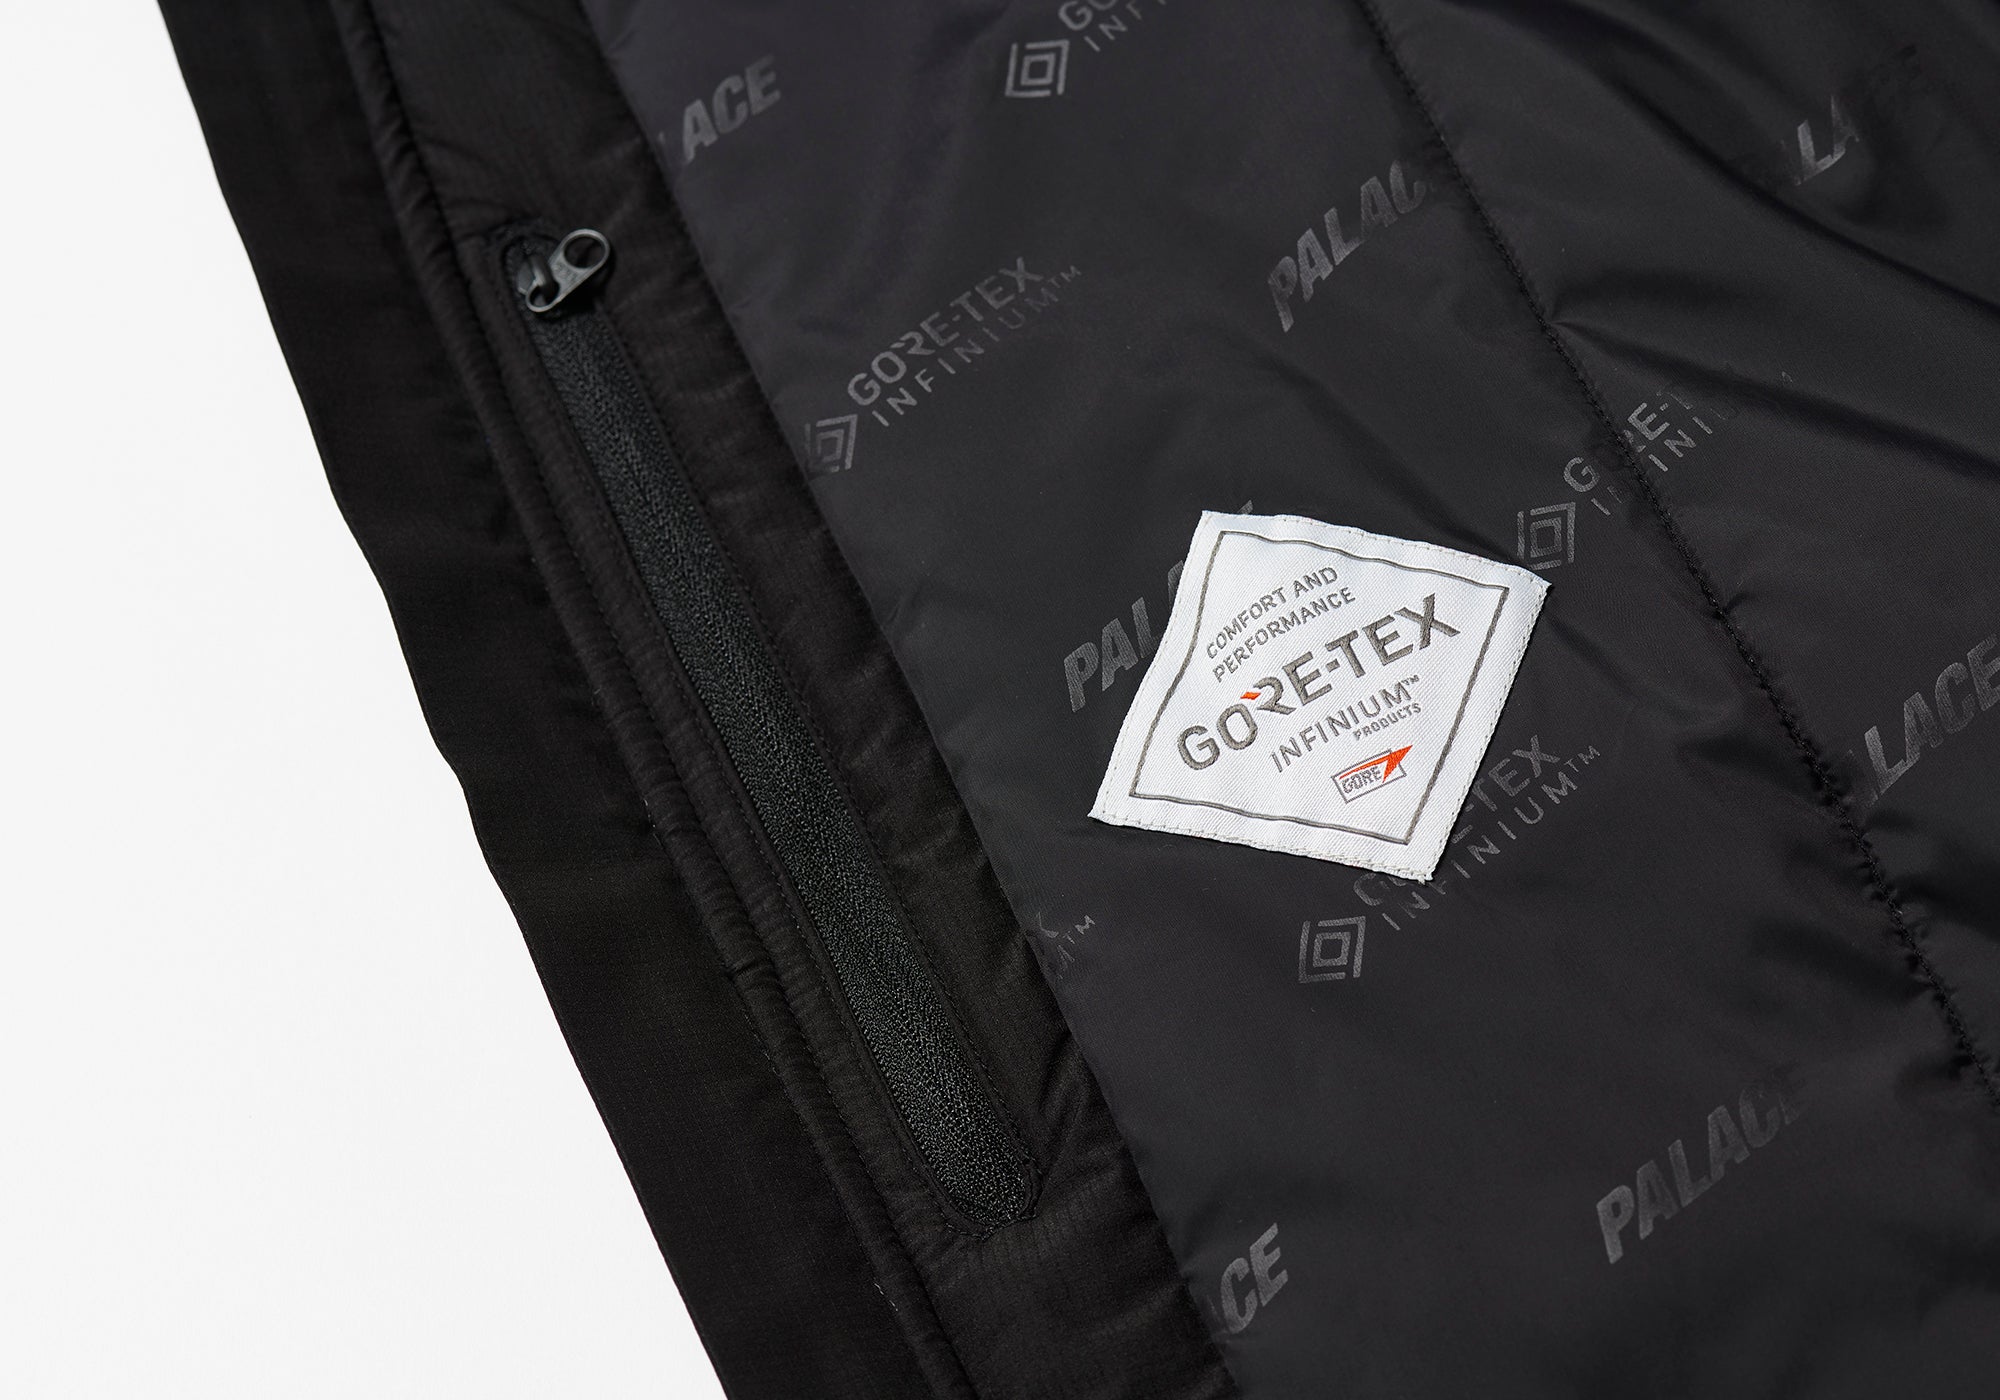 日本販売店 PALACE GORE-TEX infinium cap jacket XL laverite.mg